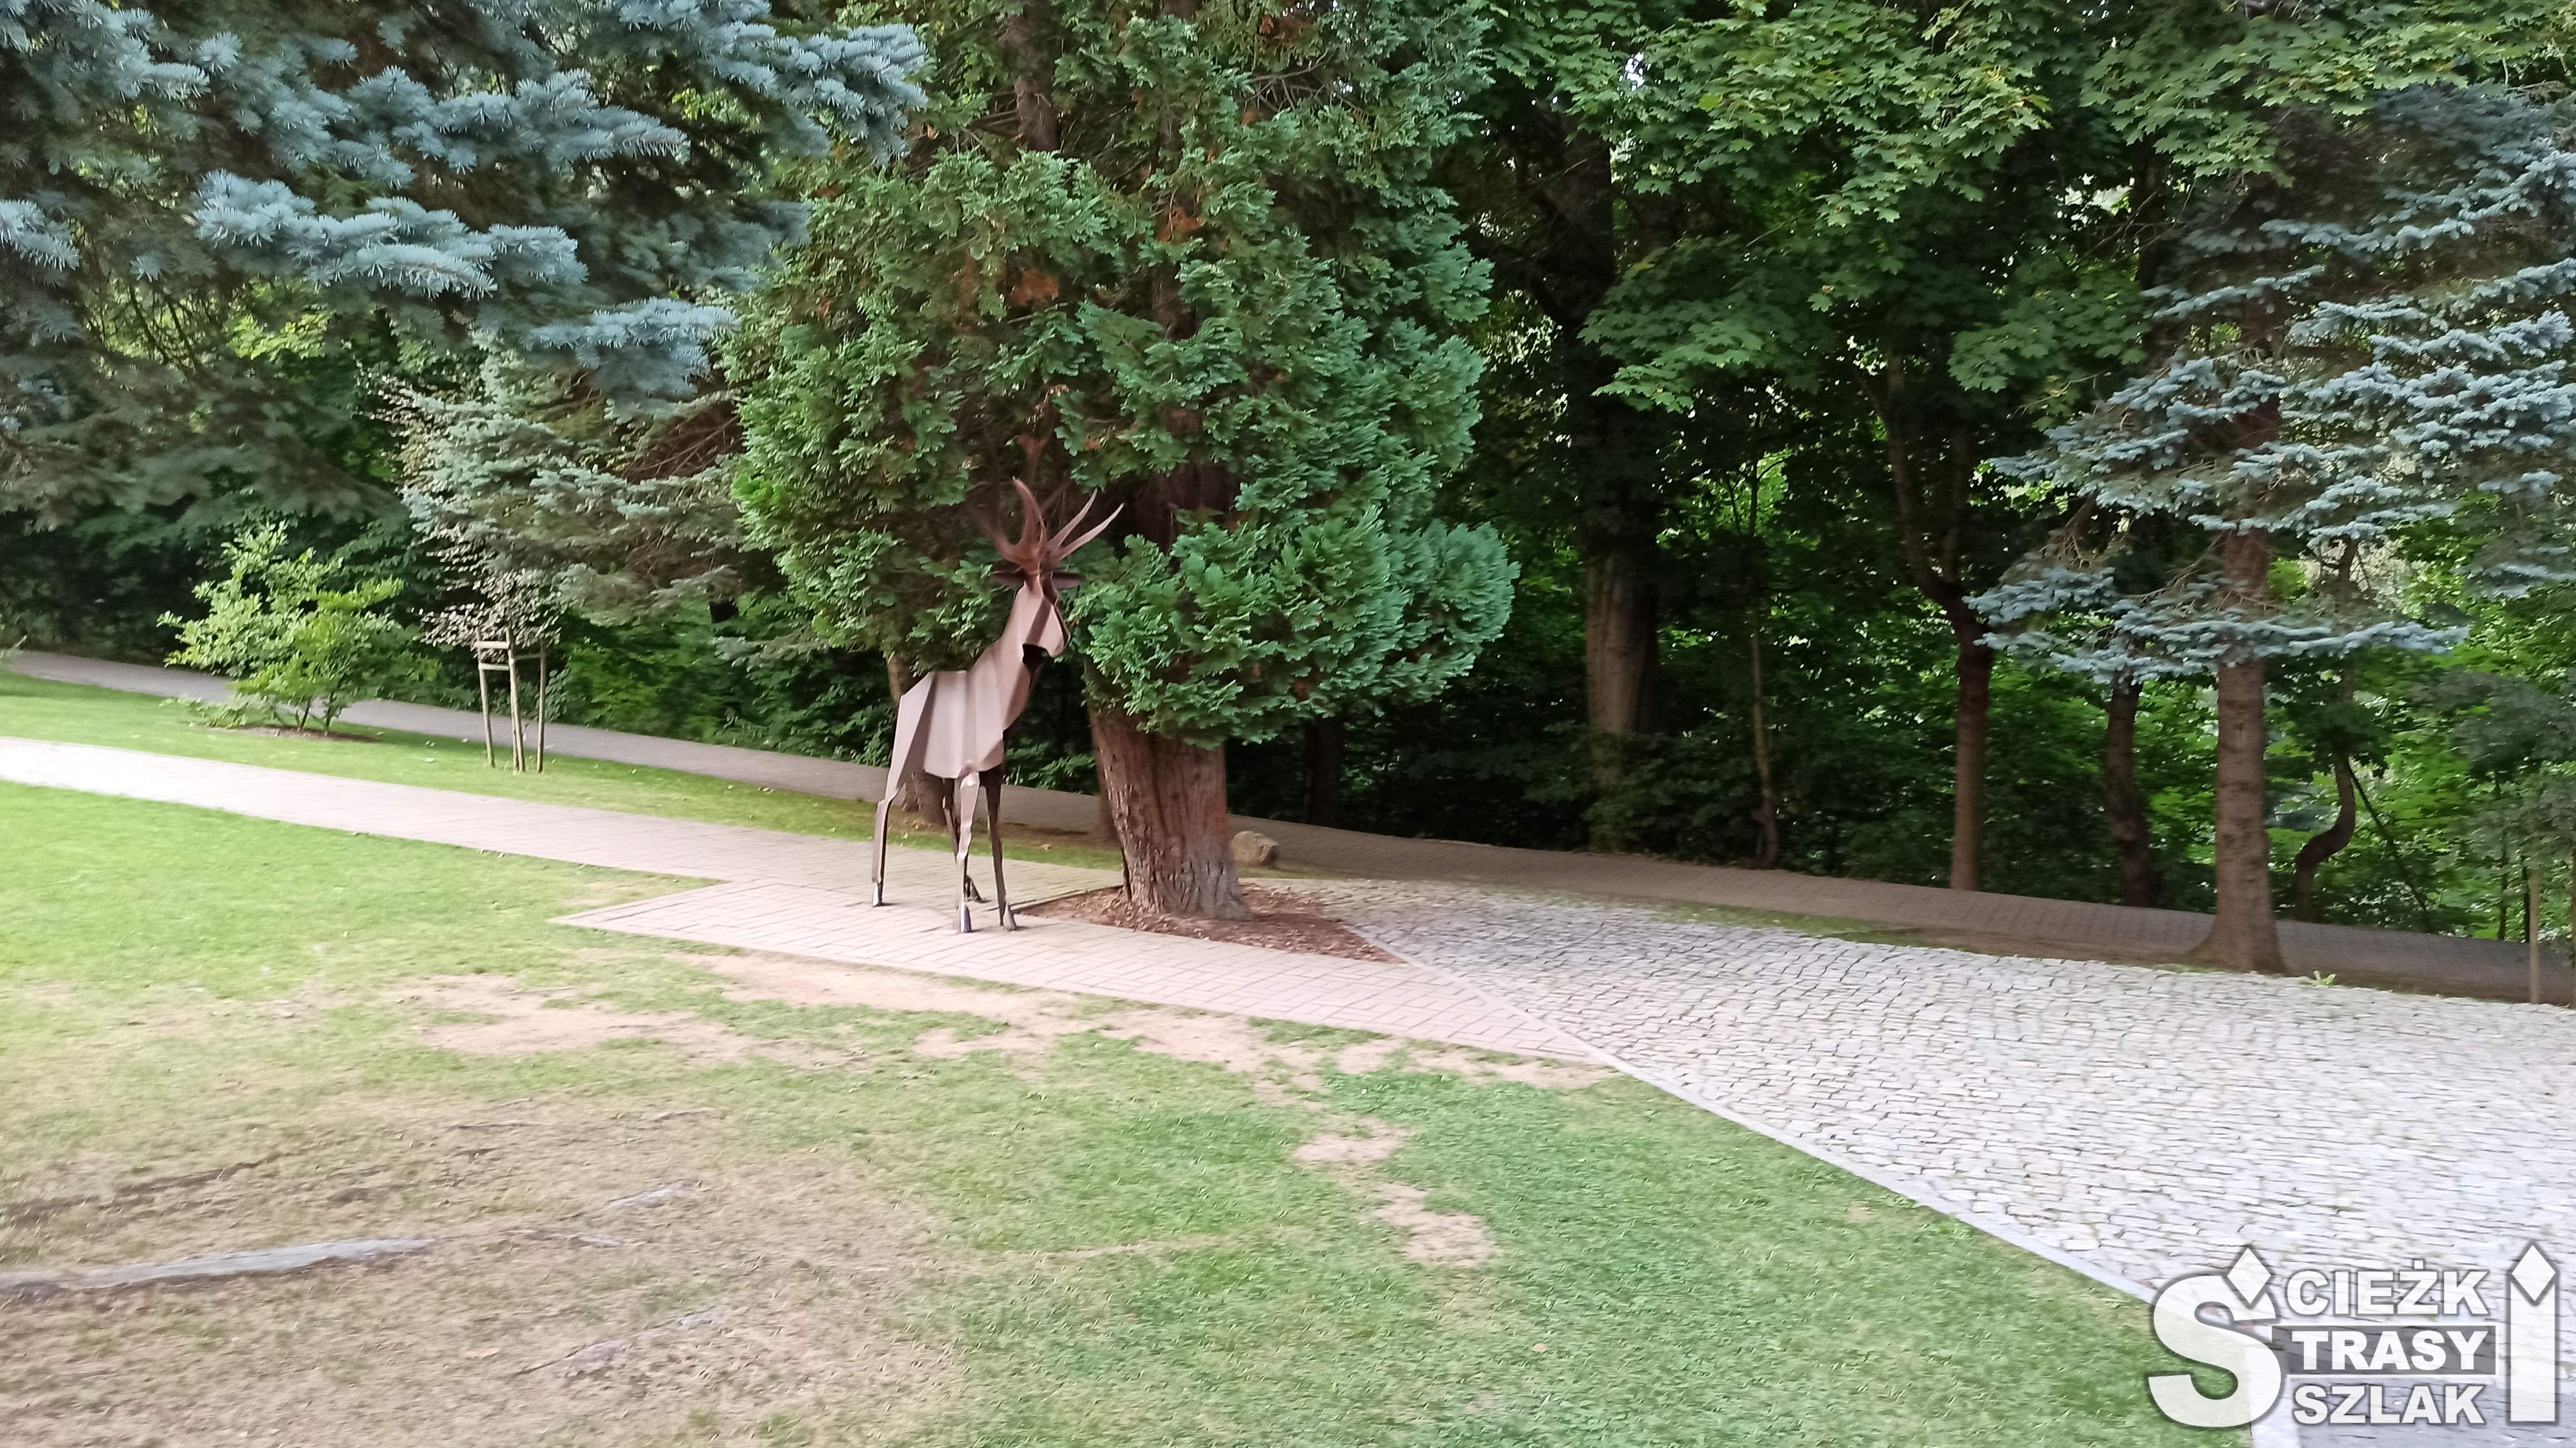 Rzeźba stalowego jelenia odpoczywającego w cieniu drzew rosnących w parku miejskim przy Zaporze na Łomnicy